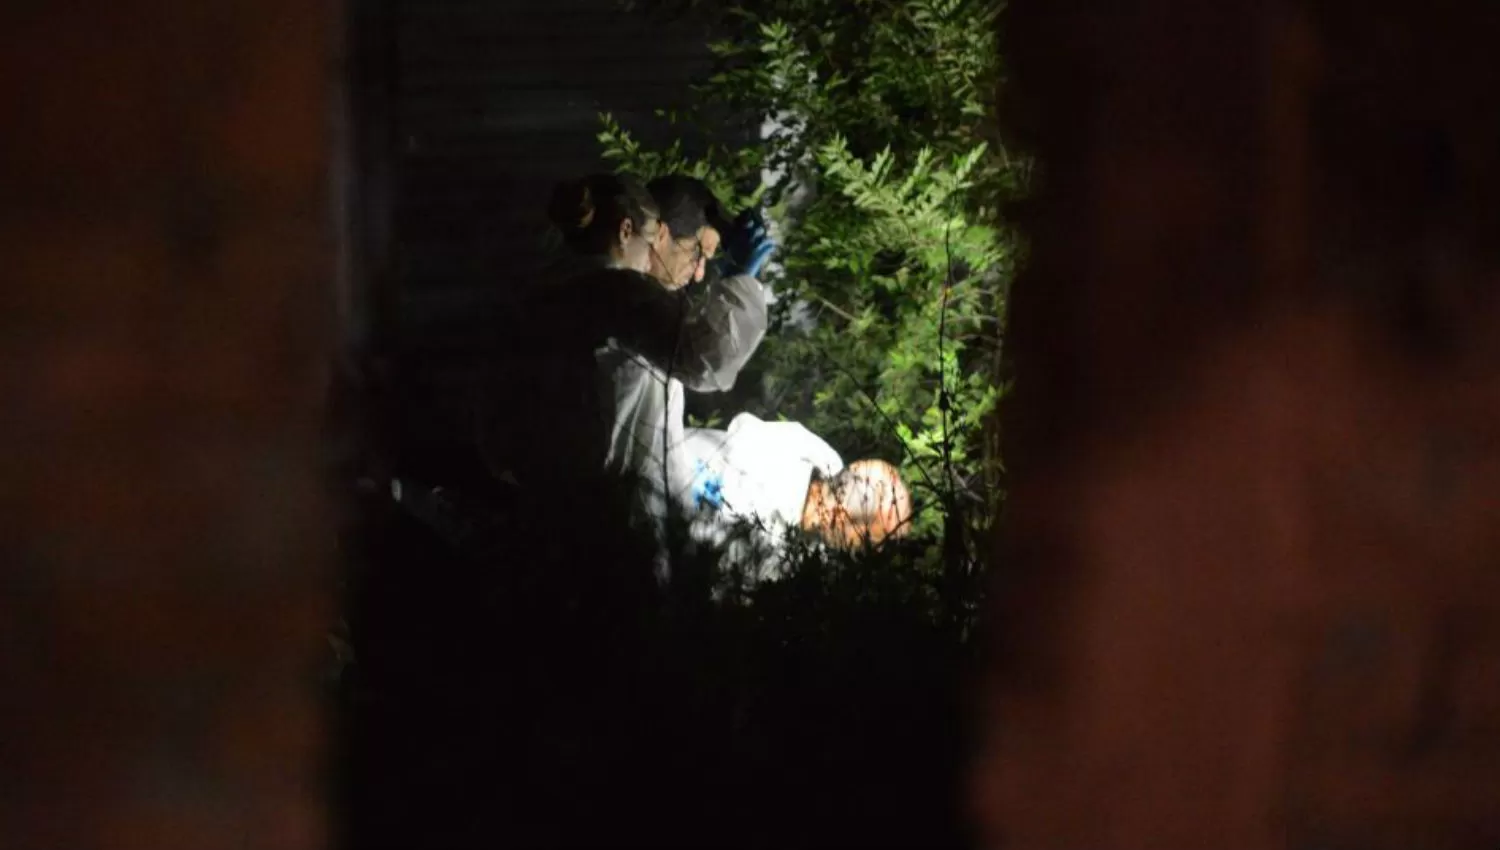 HORROR. Peritos forenses trabajaron en el lugar donde fue hallado el cuerpo de Abril. IMAGEN DE LA VOZ DEL INTERIOR / JOSÉ HERNÁNDEZ

